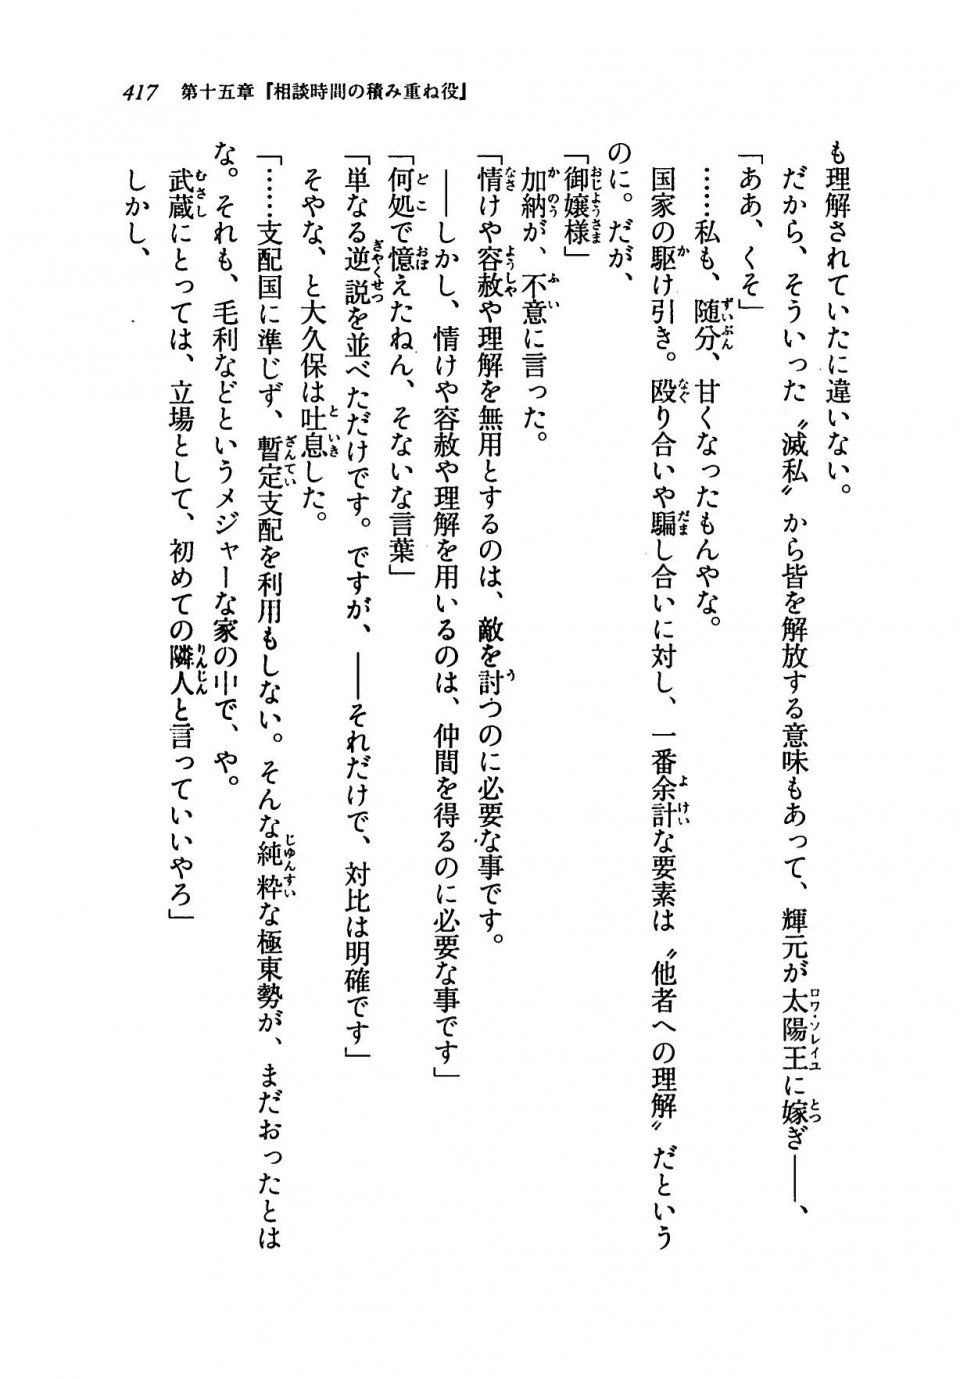 Kyoukai Senjou no Horizon LN Vol 19(8A) - Photo #417